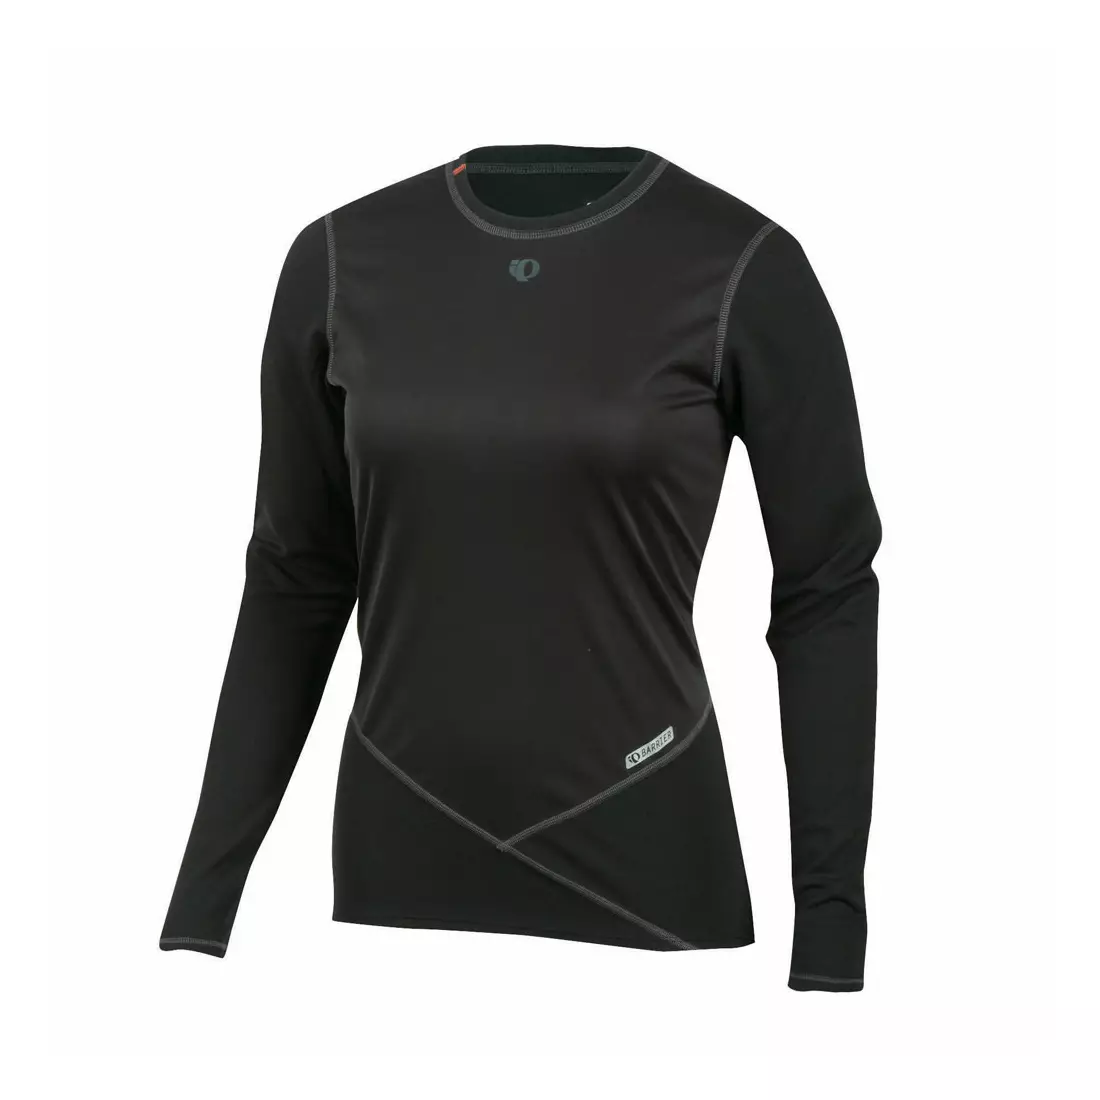 PEARL IZUMI - Barrier 14221006-021 - termoaktívne spodné prádlo, dámske D/R tričko